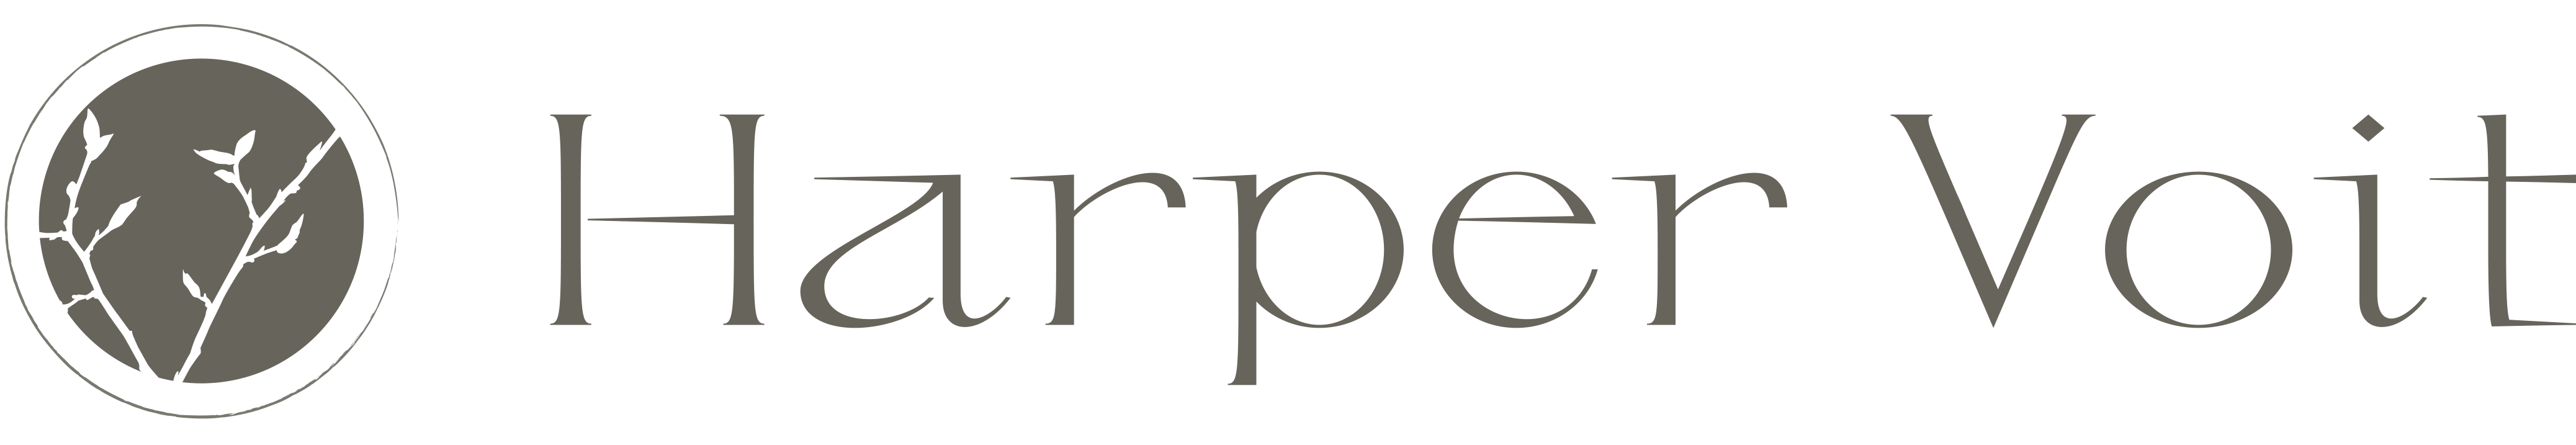 Harper Voit logo